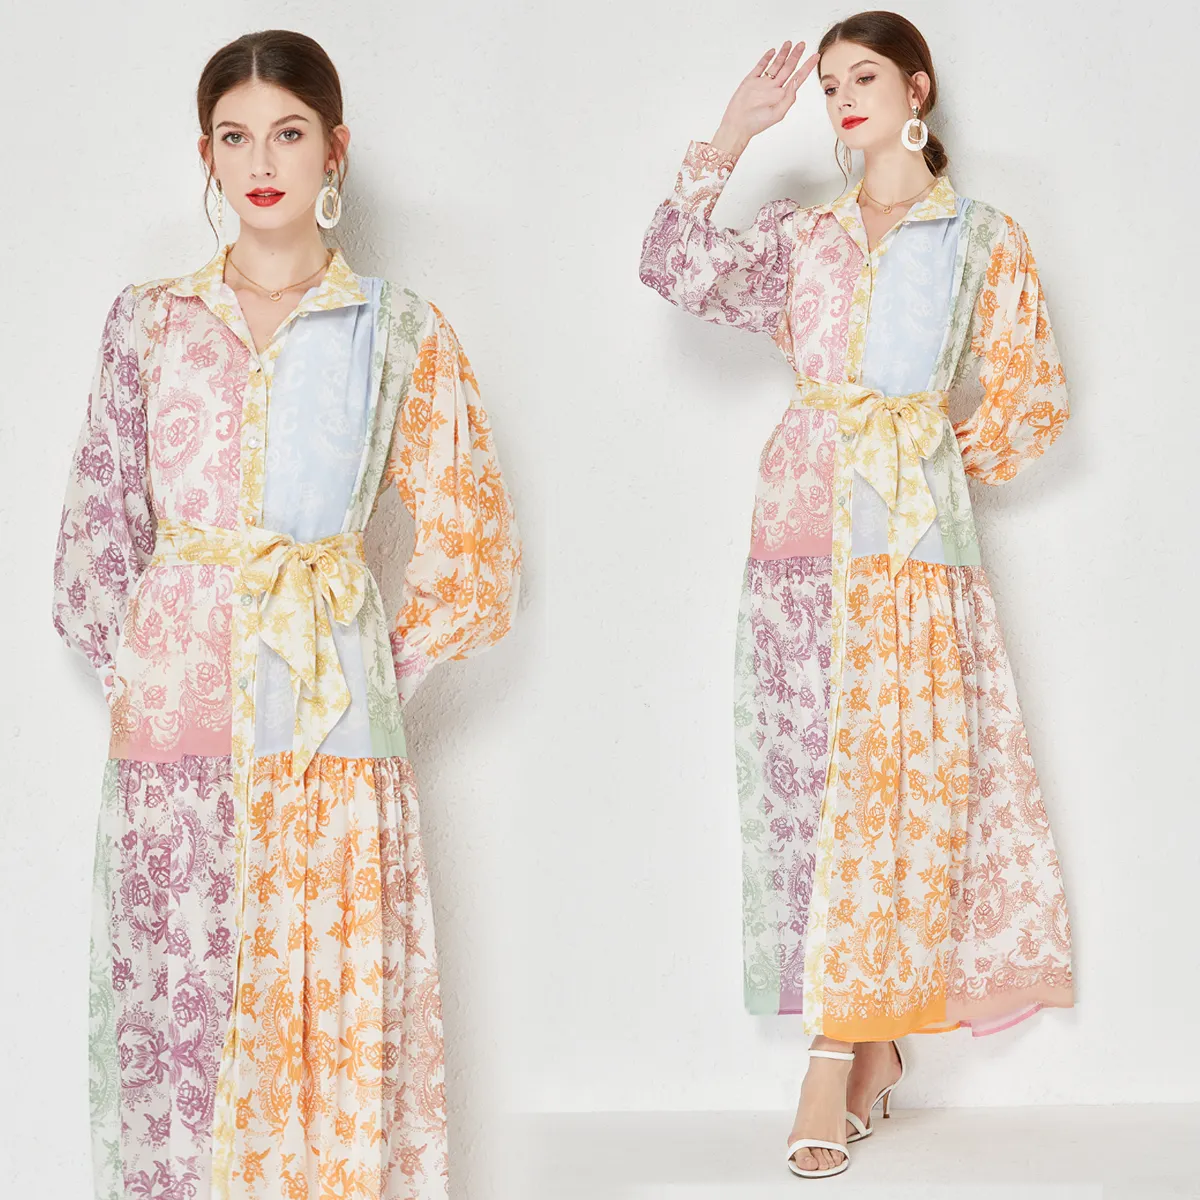 Focallure — robe longue pour femme, manches longues, imprimé Floral, style bohème, nouveauté 2022